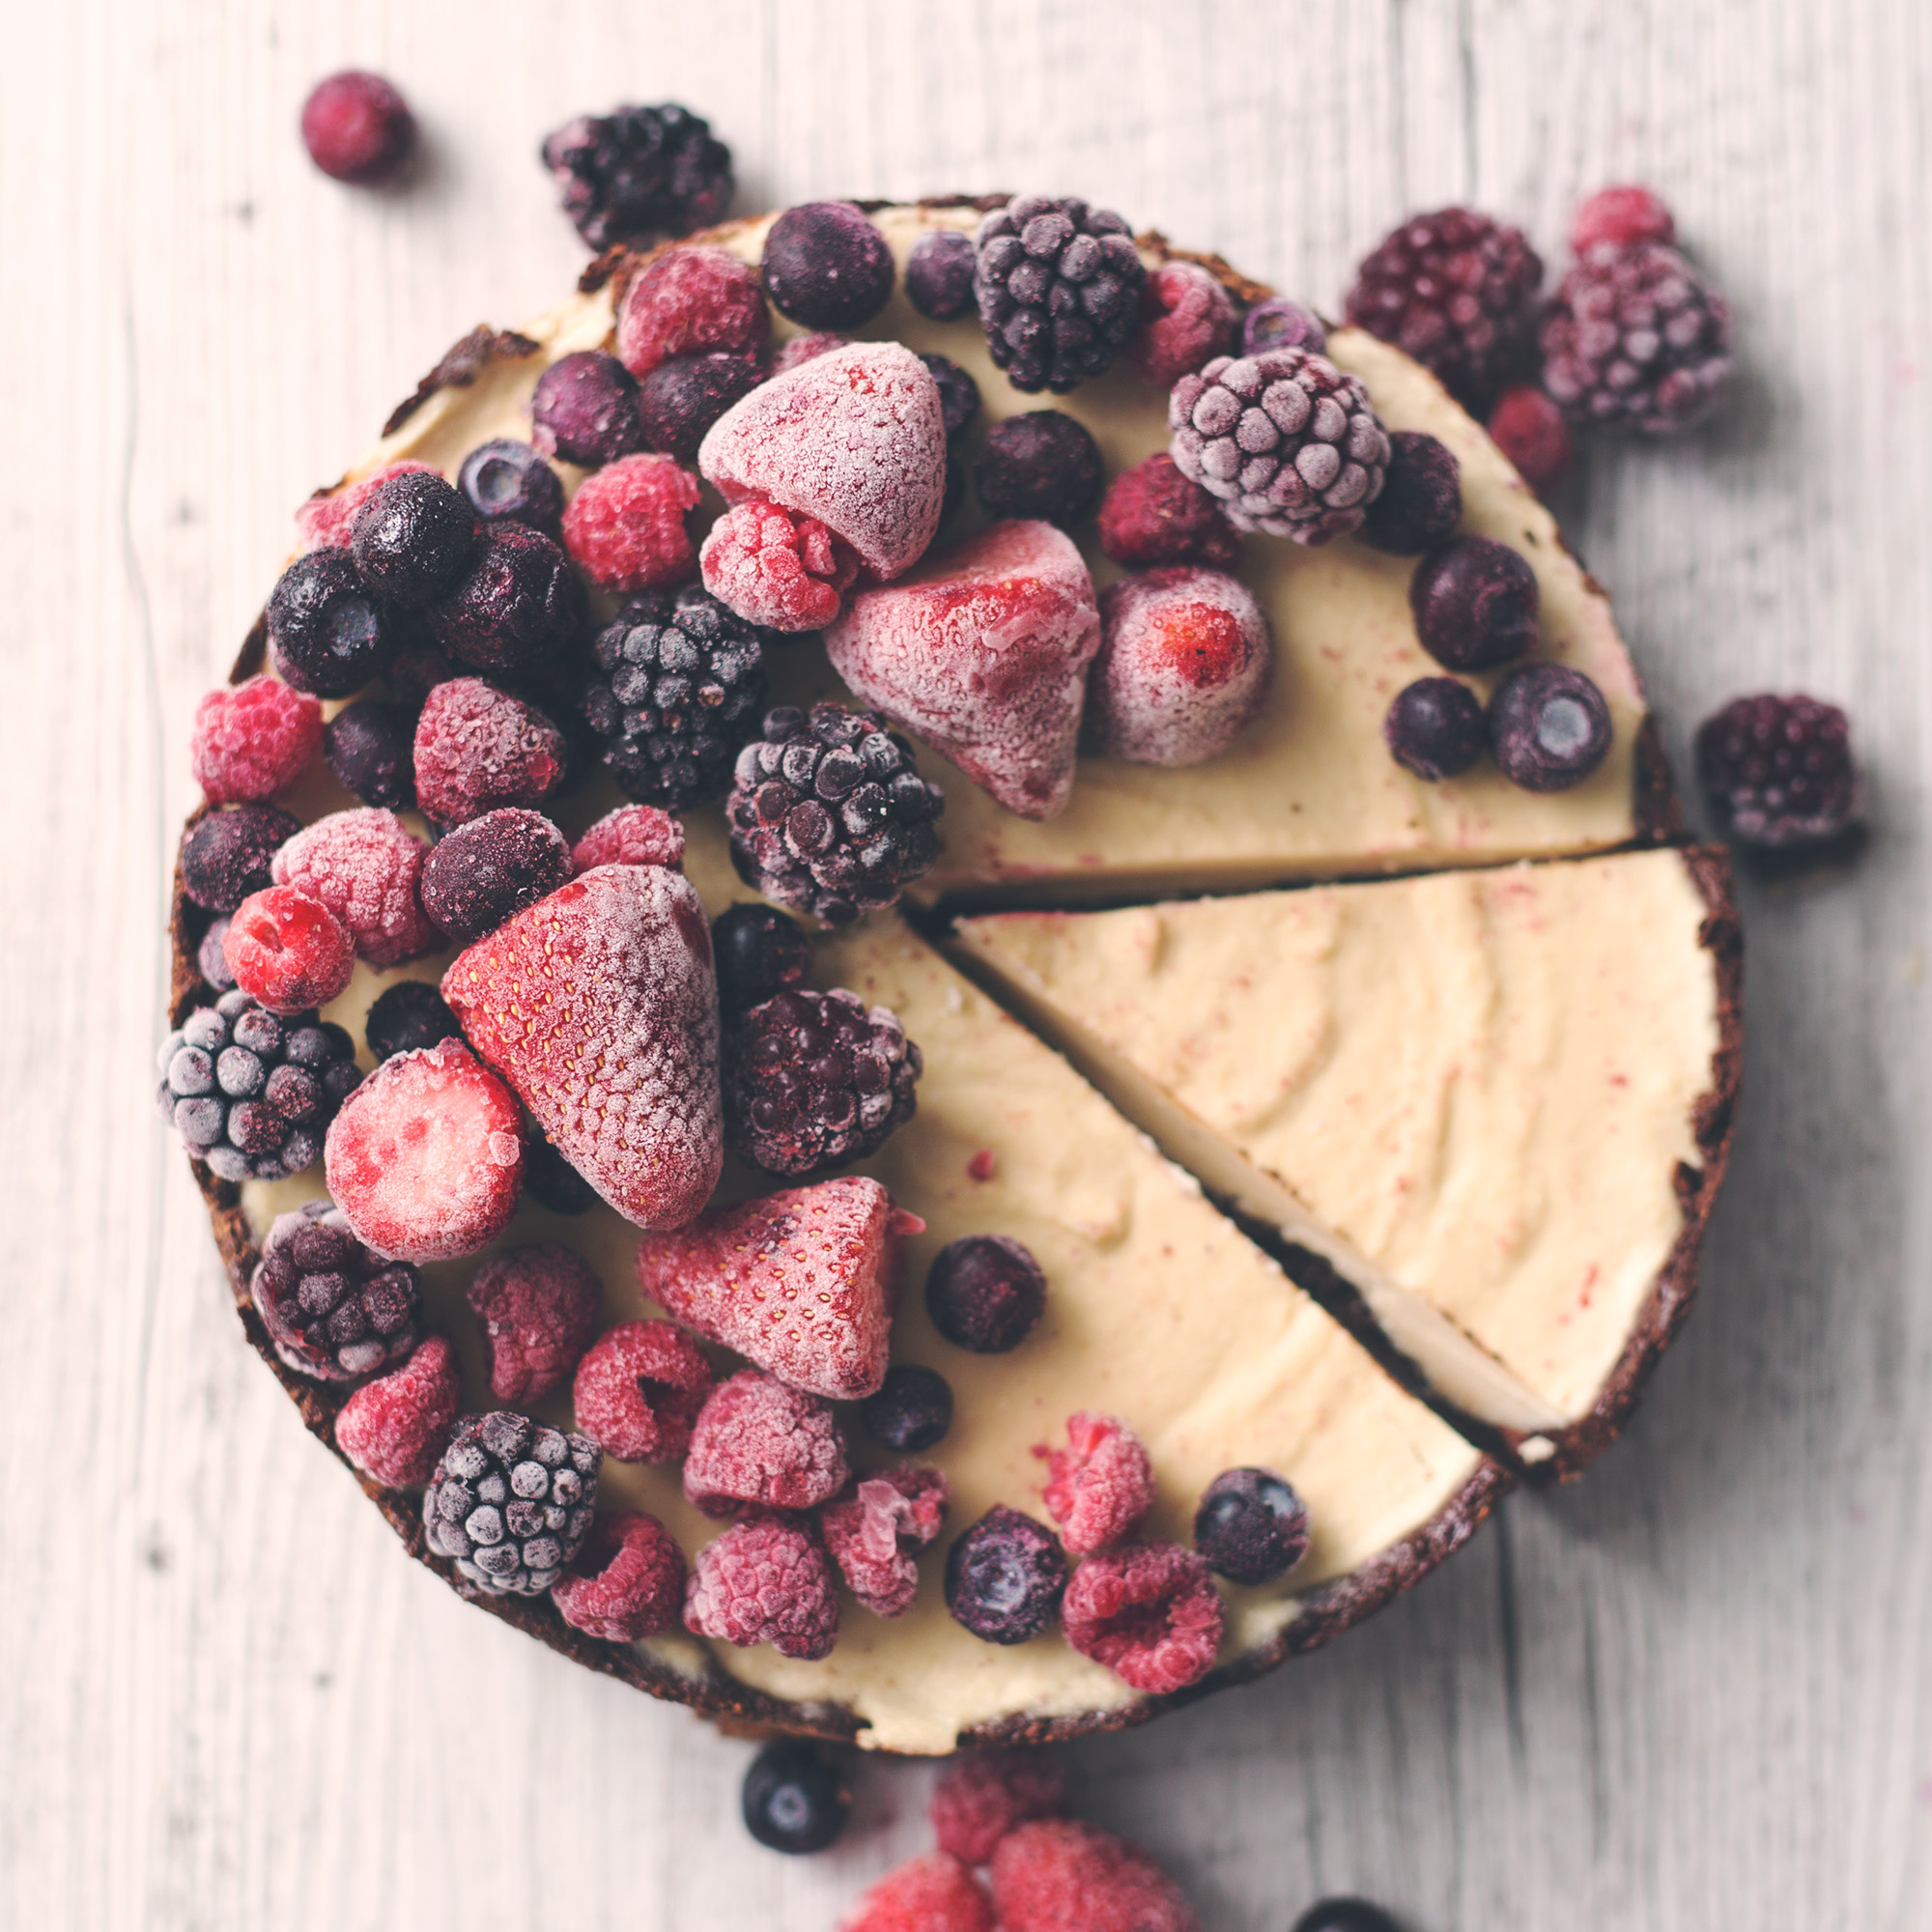 Raw Vegan Chocolate and Vanilla Cheesecake with Mixed Berries